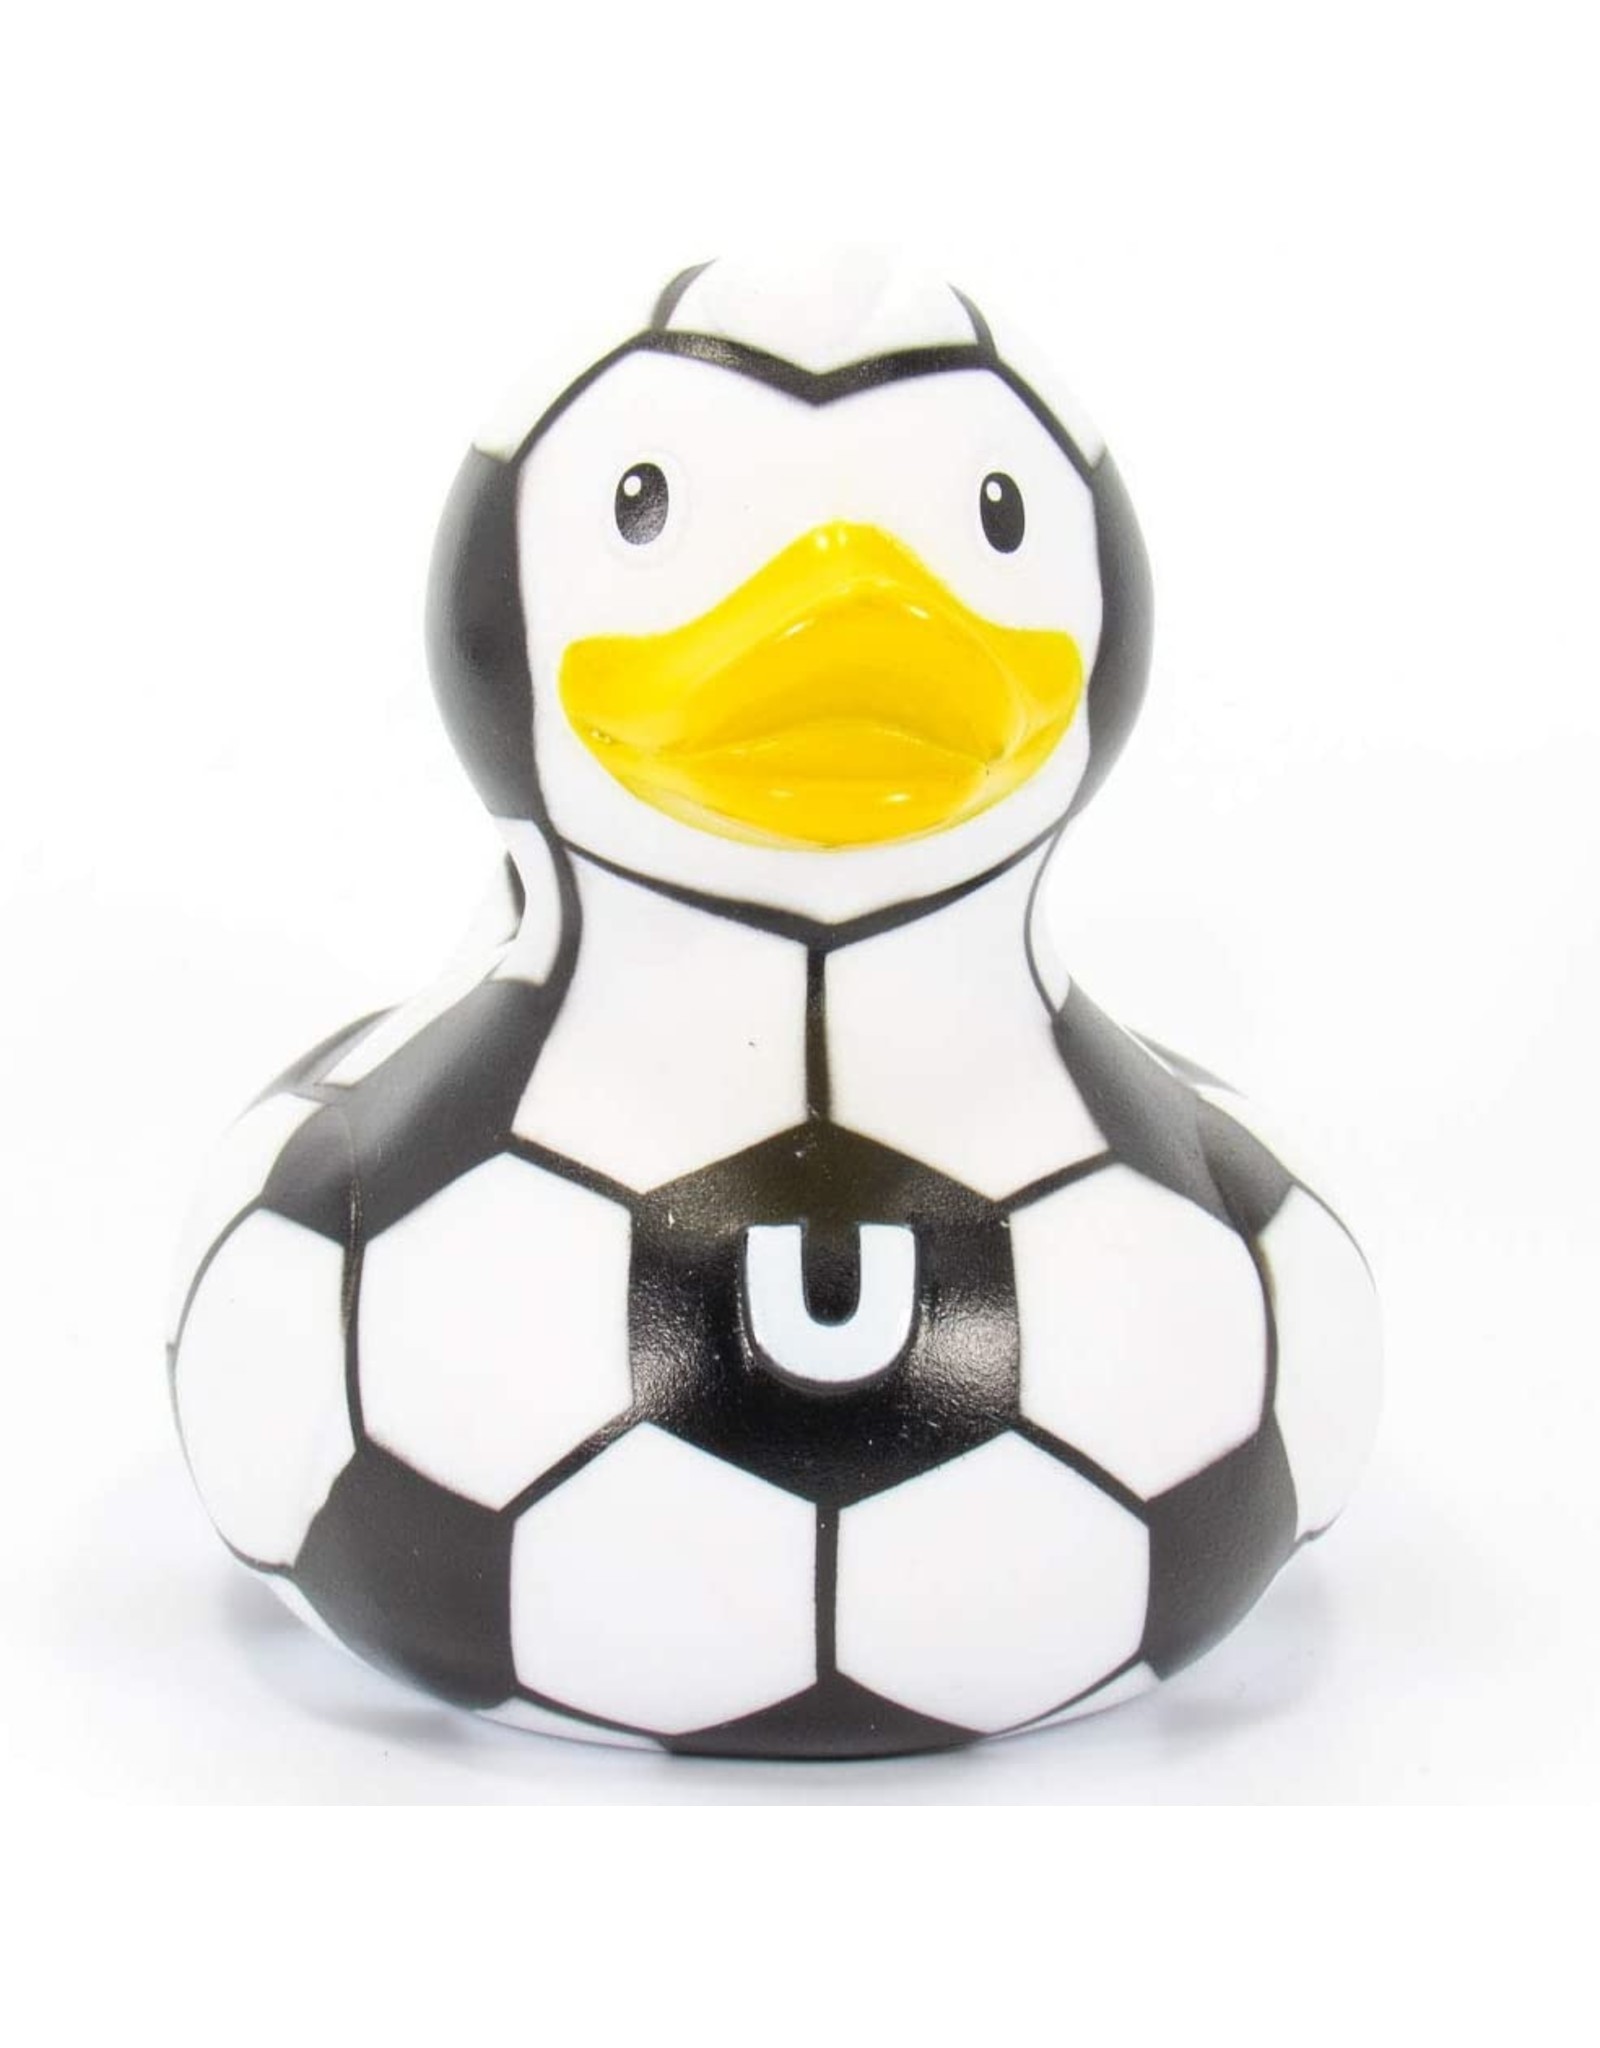 Football (Soccer) Rubber Duck